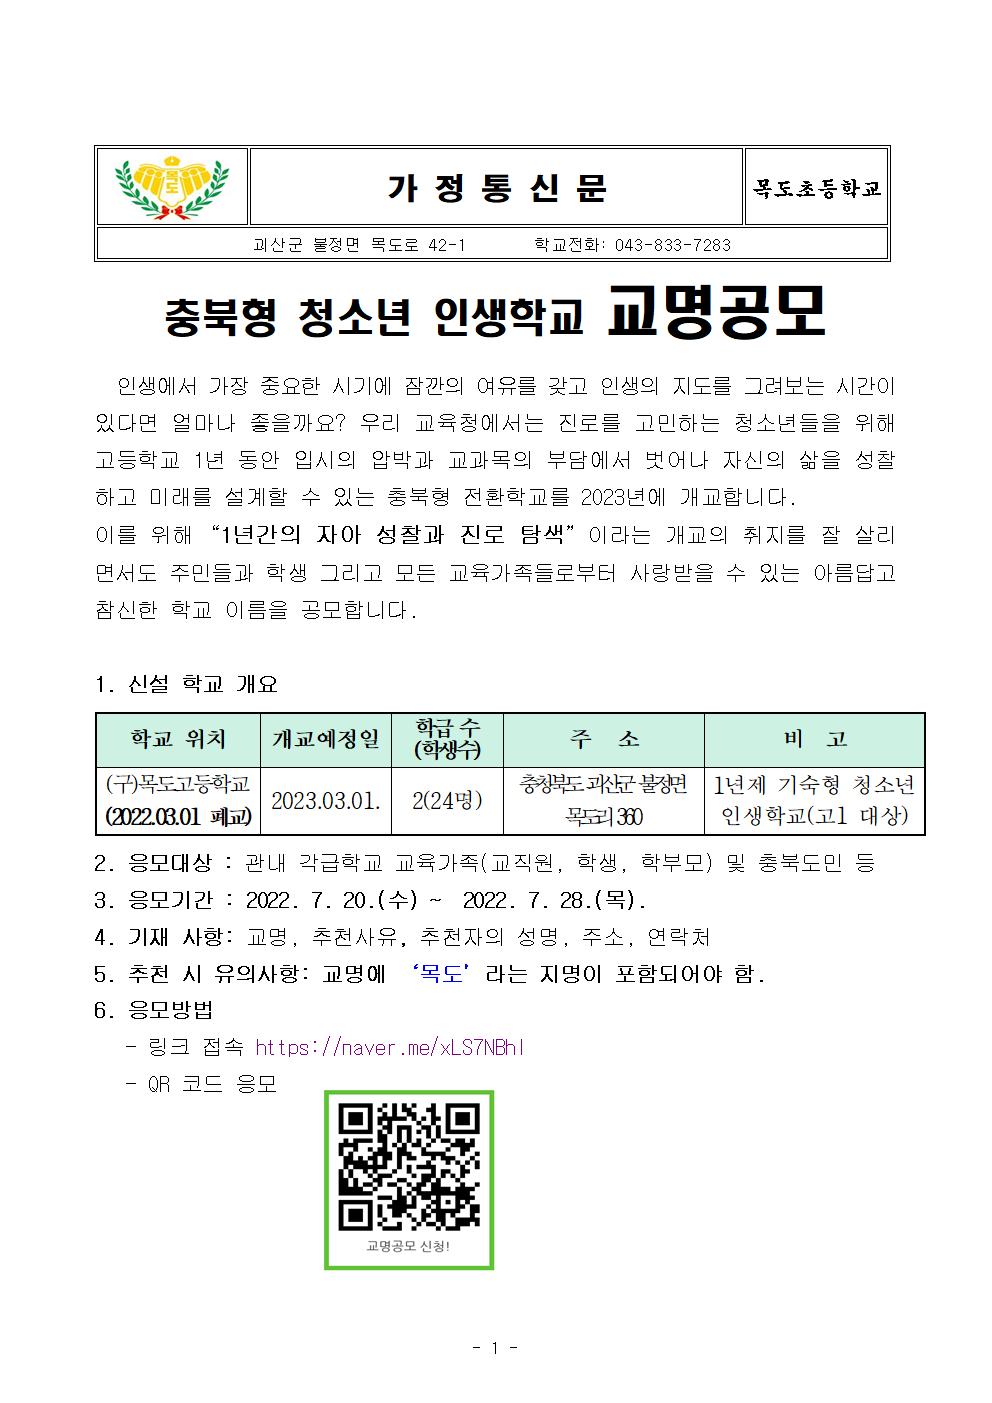 가정통신문-괴산목도전환학교 교명 공모 안내문001